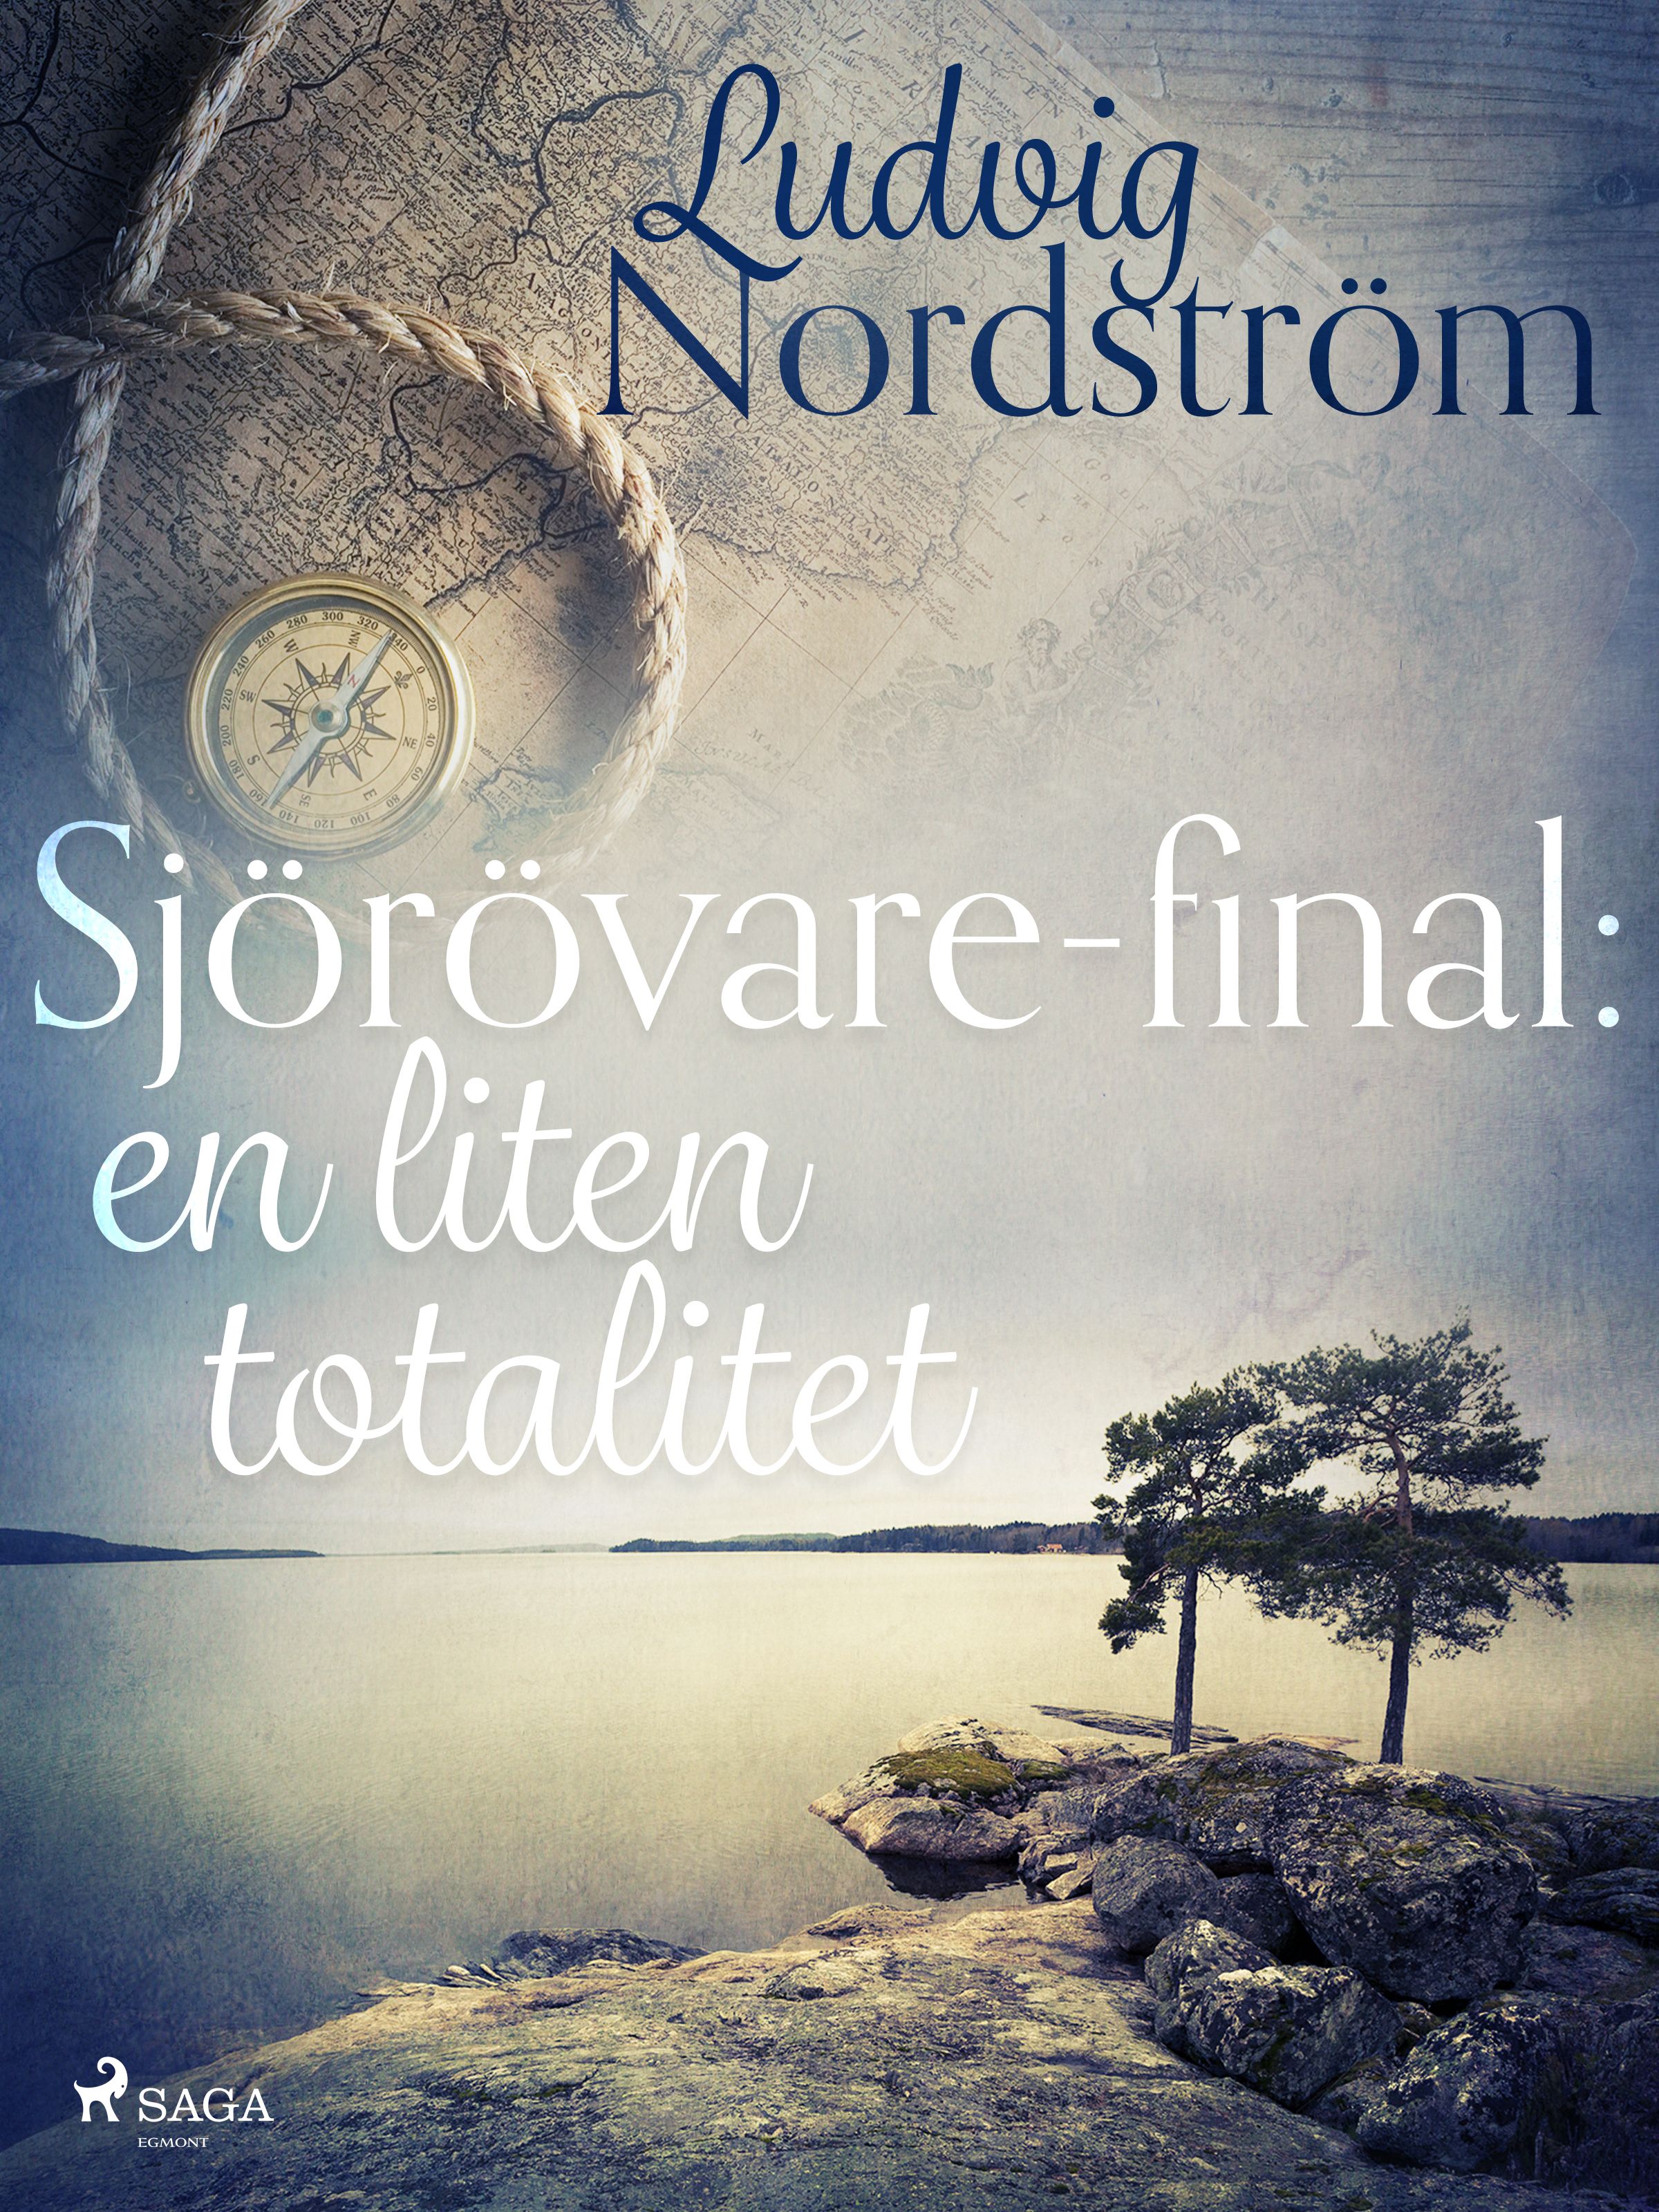 Sjörövare-final: en liten totalitet, e-bok av Ludvig Nordström